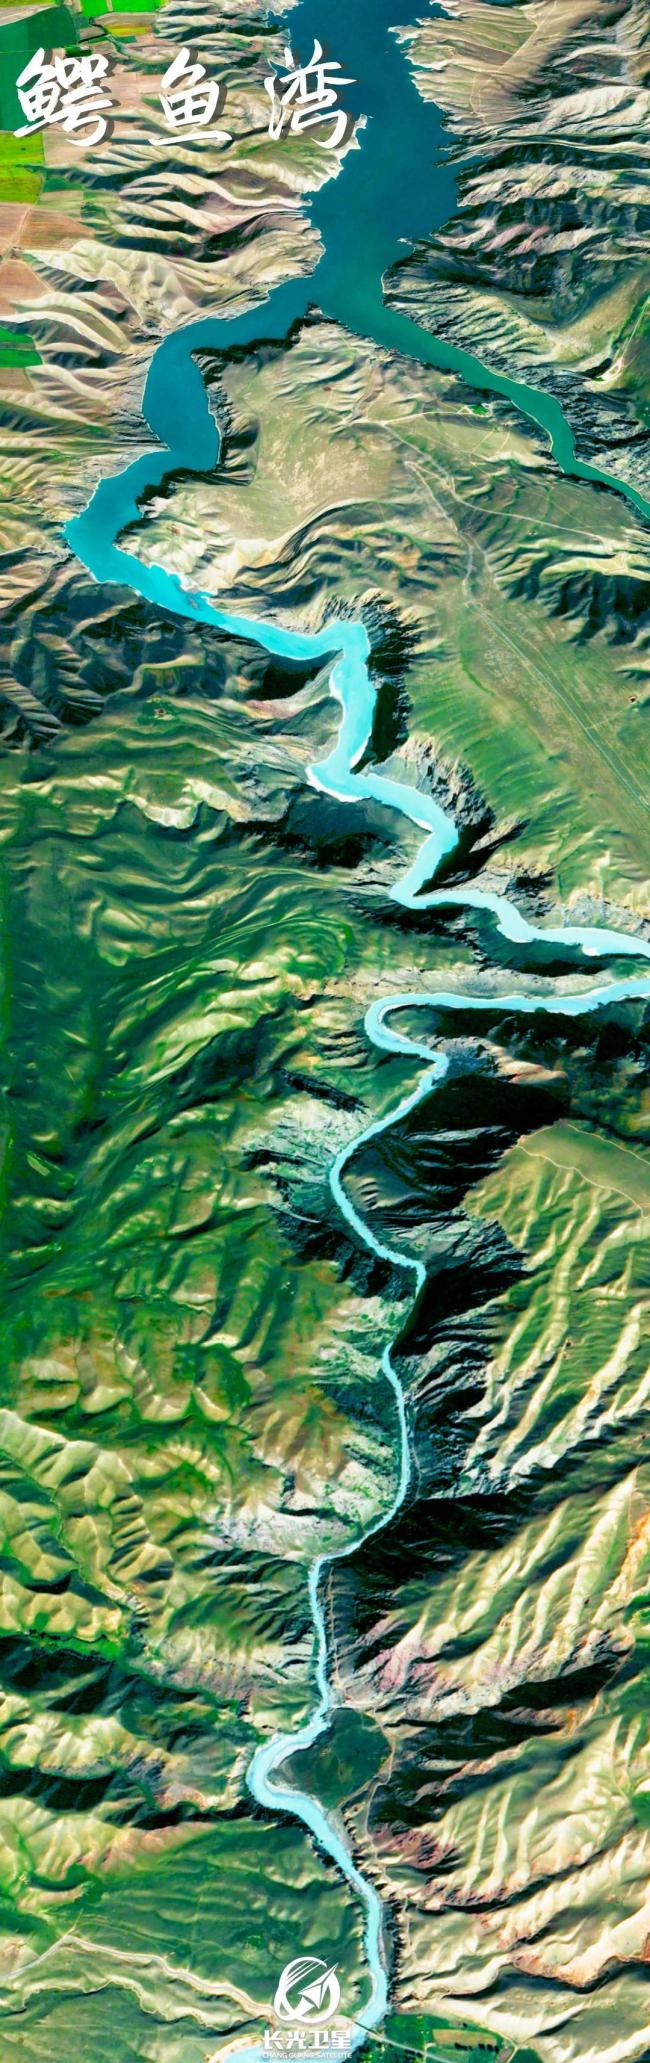 卫星图看中国河流 大地脉络一目了然